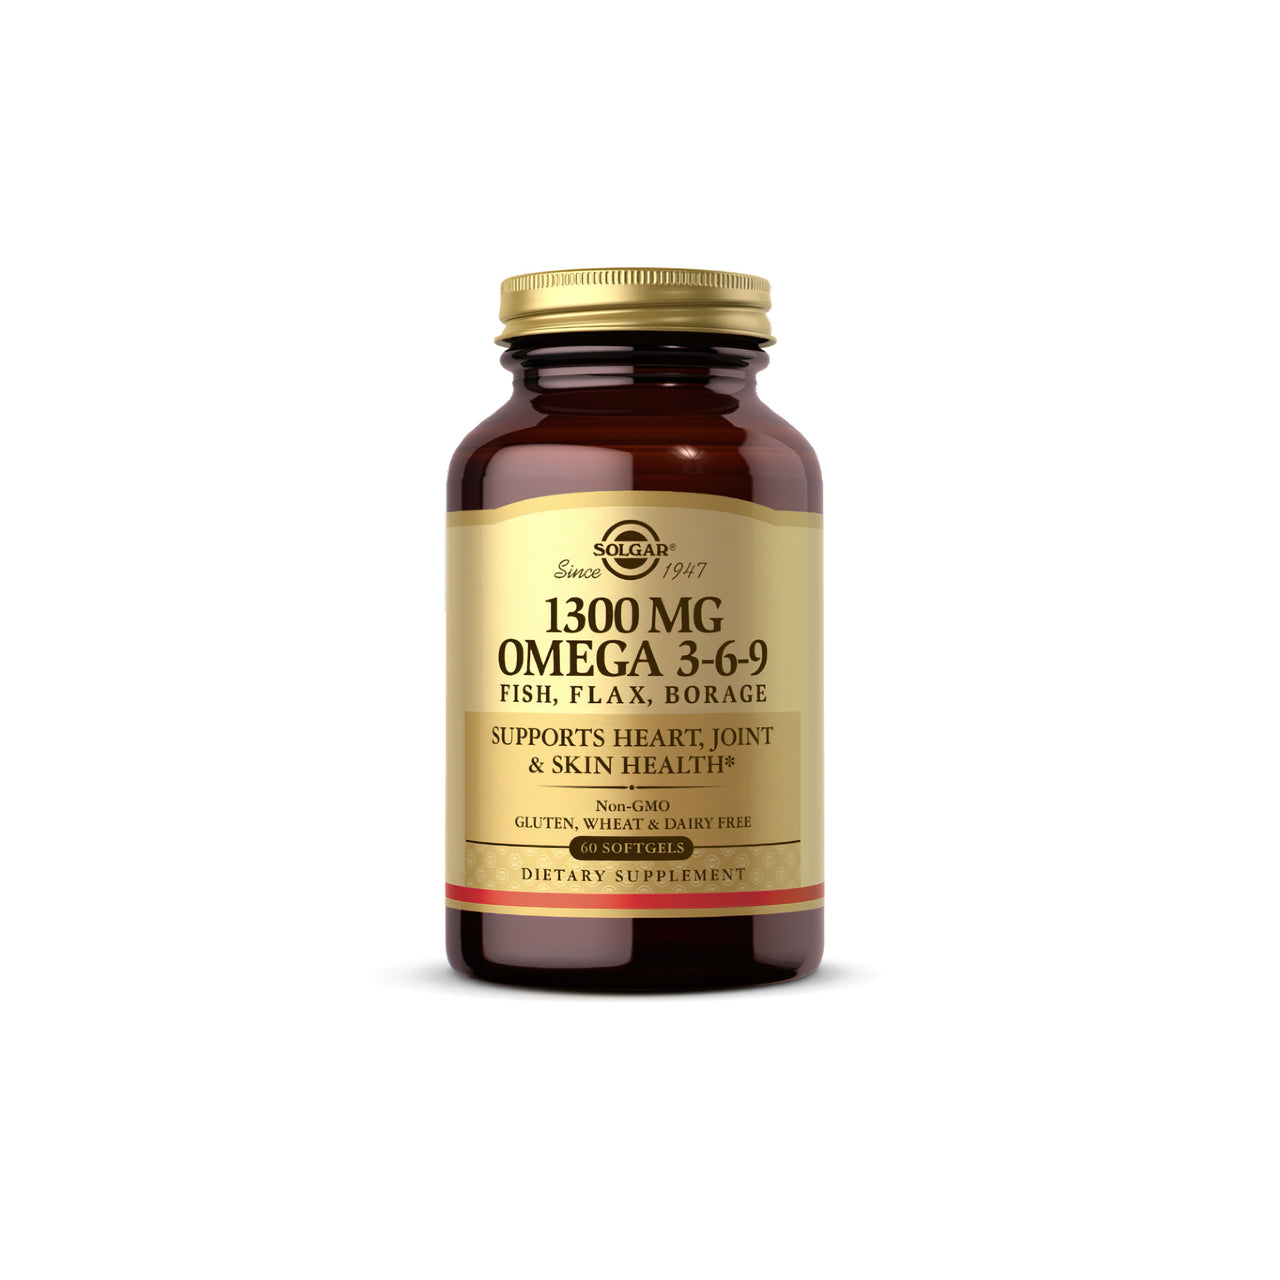 Un flacone di Solgar Omega 3-6-9 60 sgel, distillato molecolarmente per garantire la purezza e contenente 1000 mg.